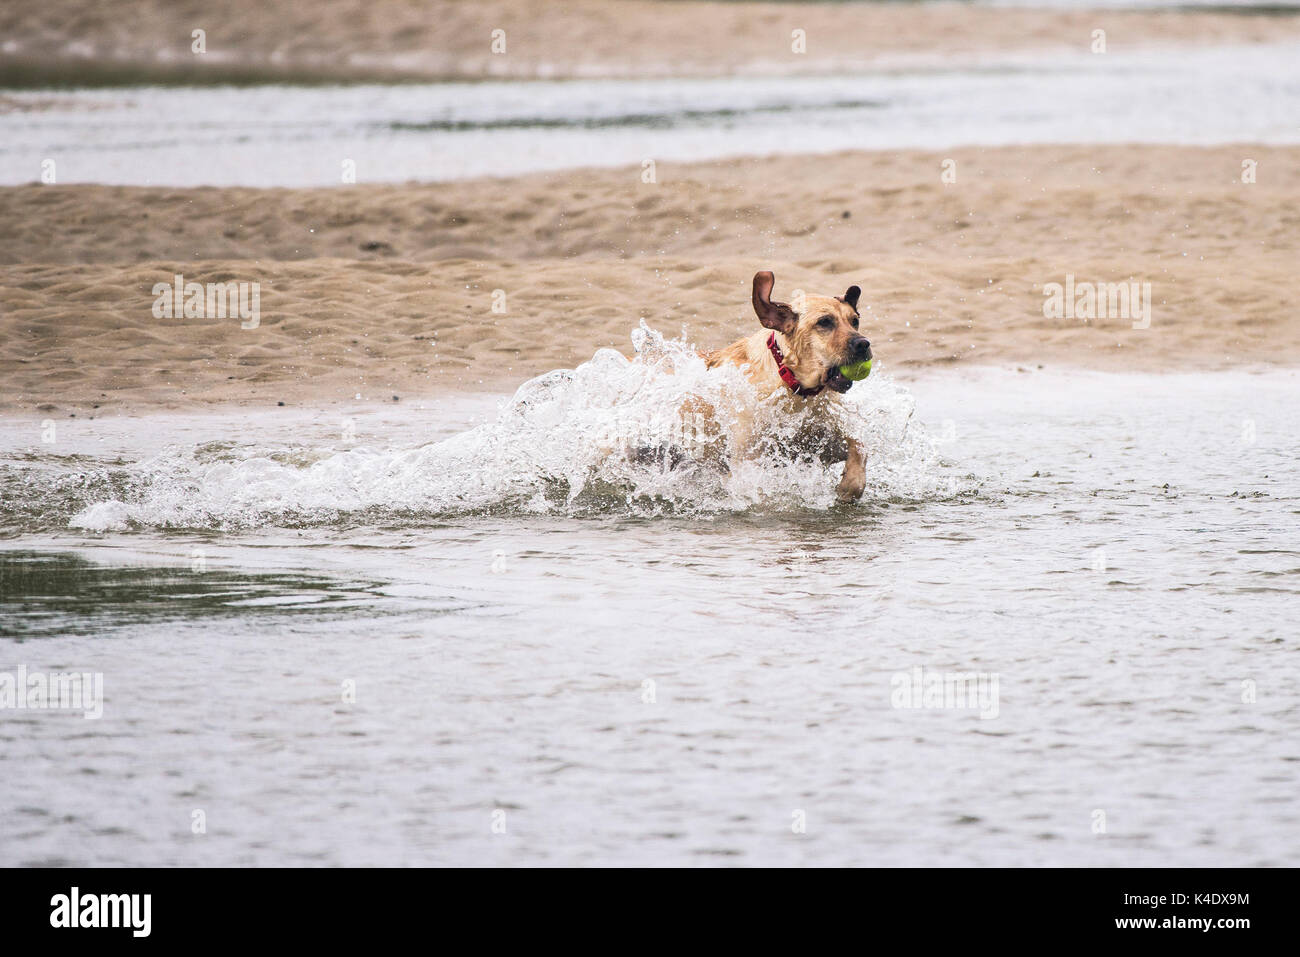 Gannel Estuary, Newquay, Cornwall - ein Hund spielt mit seinem Ball im Fluss Gannel bei Ebbe in Newquay, Cornwall. Stockfoto